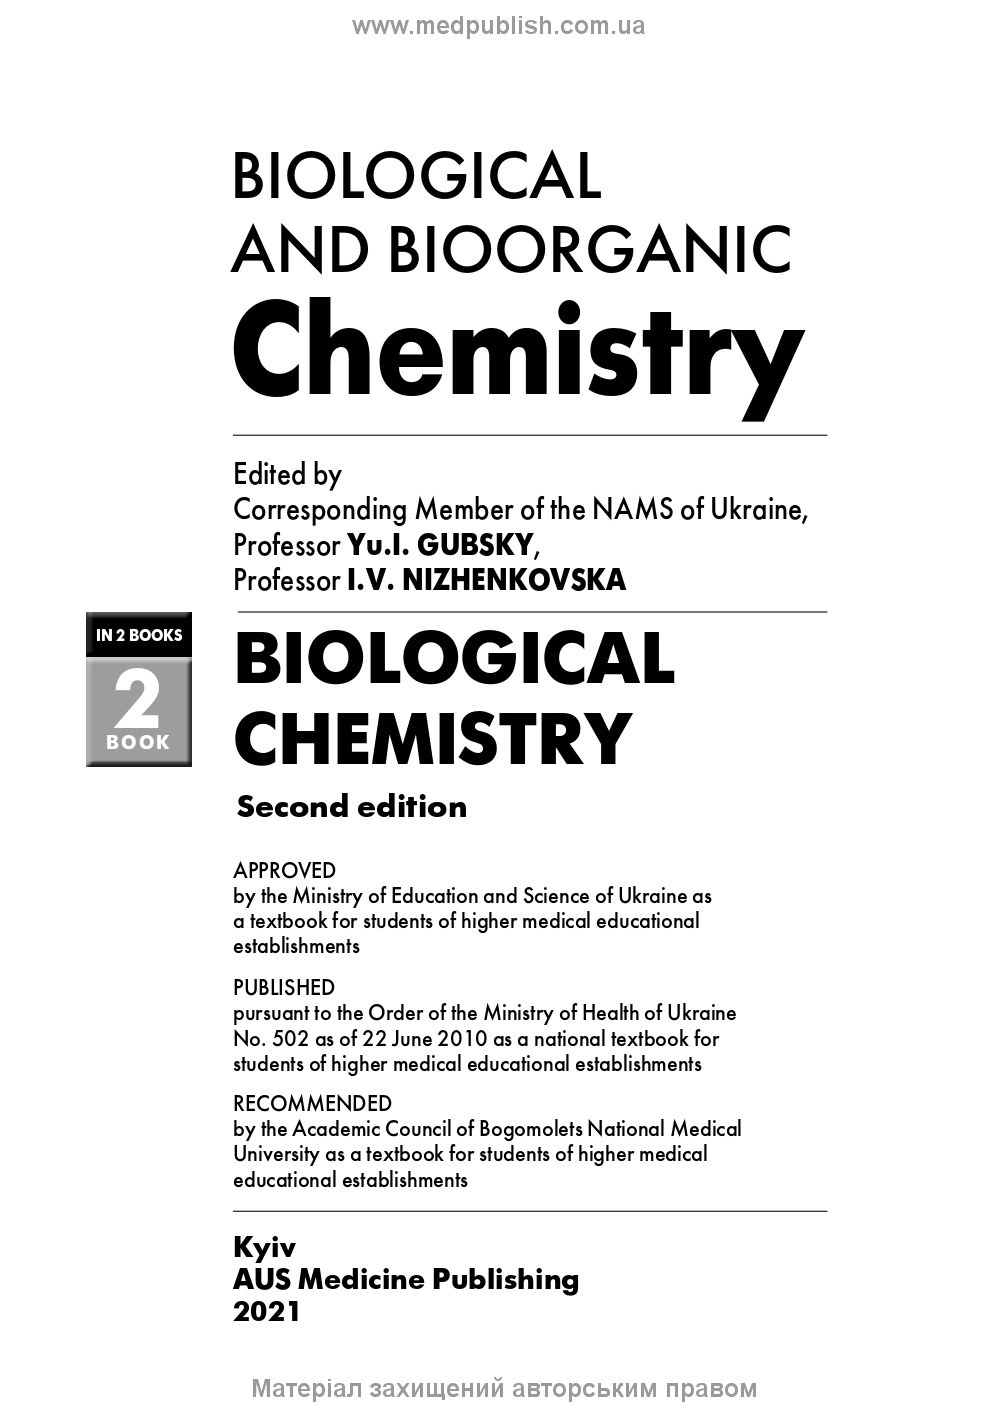 Biological and Bioorganic Chemistry: in 2 books. Book 2. Biological Chemistry: textbook. Автор — I.V. Nizhenkovska, Yu.I. Gubsky, М.М. Korda, B.G. Borzenko, O.Z. Brazaluk, G.M. Ersteniuk, K.O. Efetov, V.I. Zhukov, N.V. Zaichko, I.O. Komarevtseva, M.B. Lutsyuk, O.O. Mardashko, I.F. Meshchyshen, K.S. Neporada, O.Ya. Sklyarov, L.M. Tarasenko, O.M. Torokhtin, T.I. Bondarchuk, O.V. Kuznetsova, O.V. Lozova, A.S. Yagupova. 